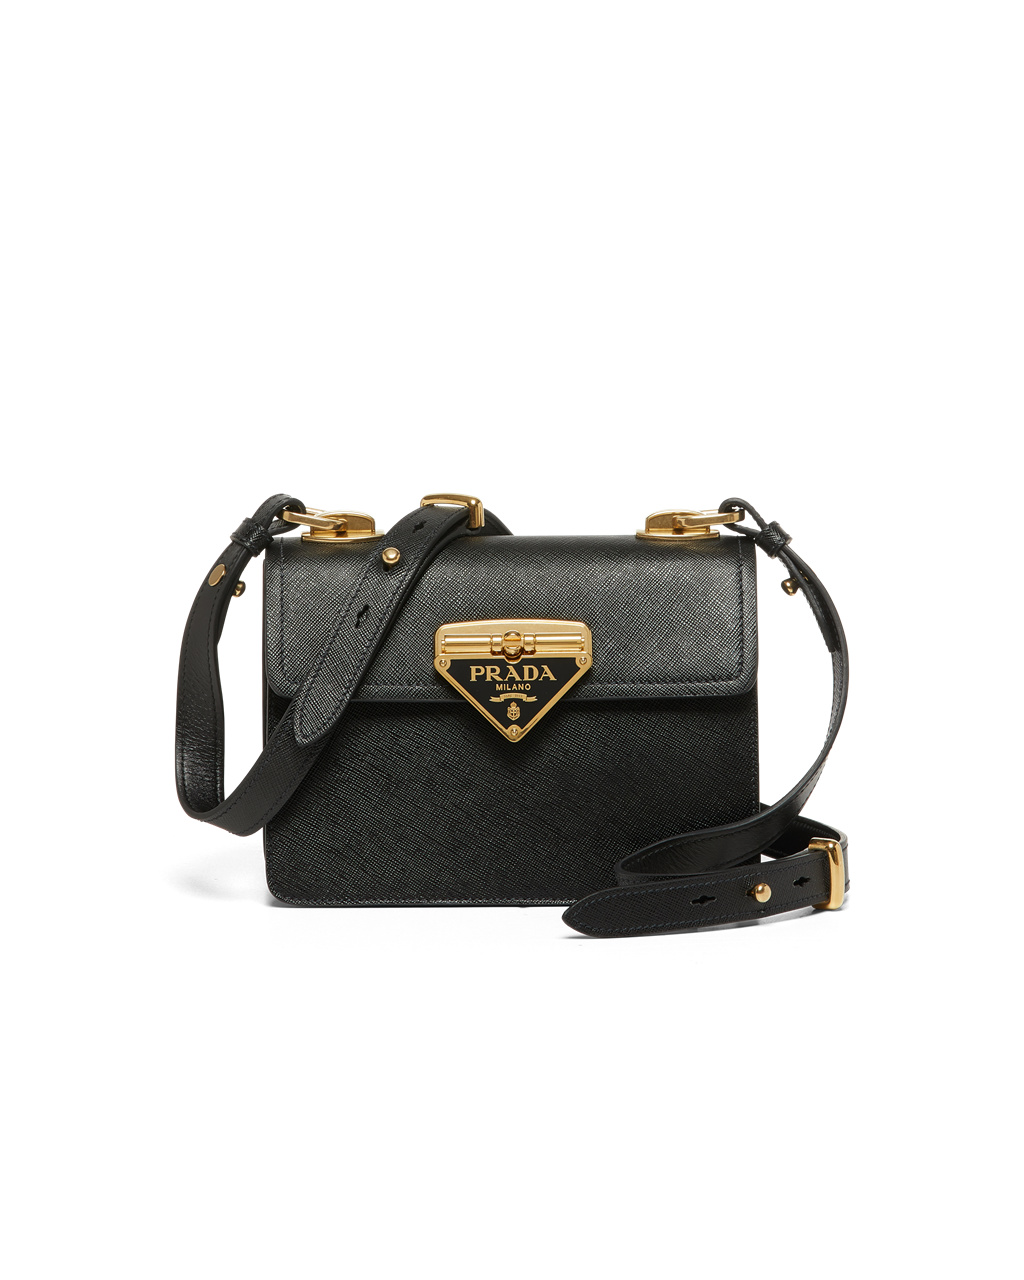 Prada Women's Saffiano Leather Shoulder Bag